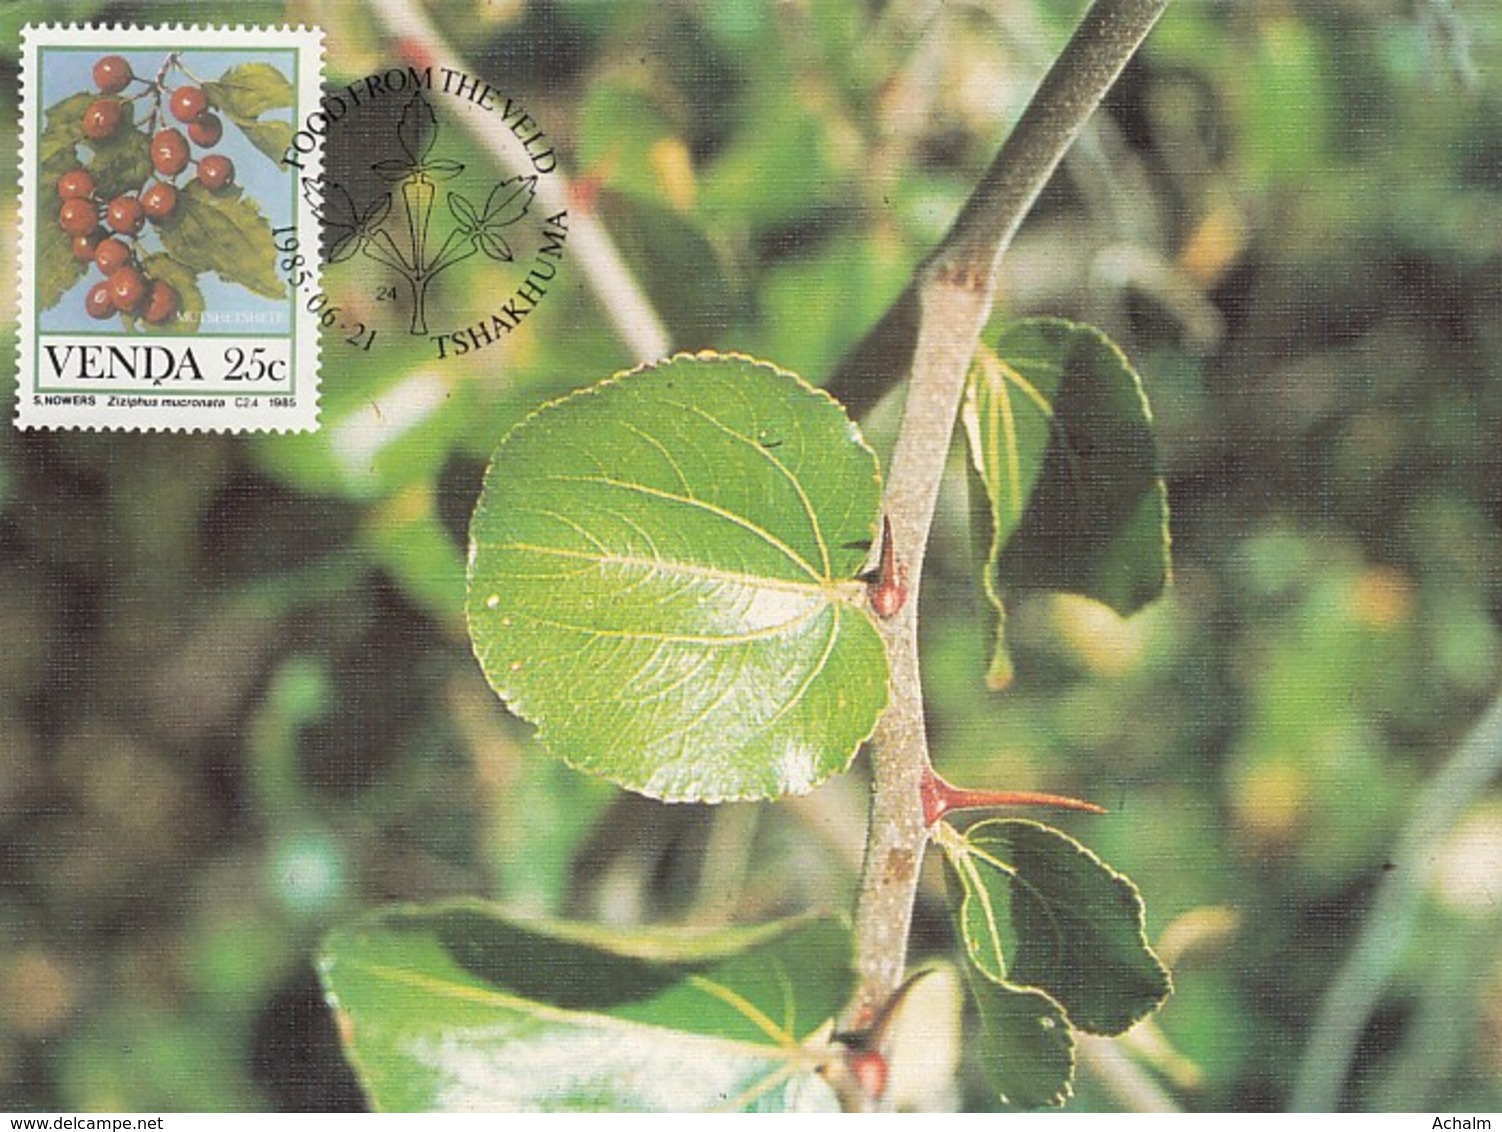 Venda - Maximum Card Of 1985 - MiNr. 113 - Fruits - Ziziphus Mucronata - Venda